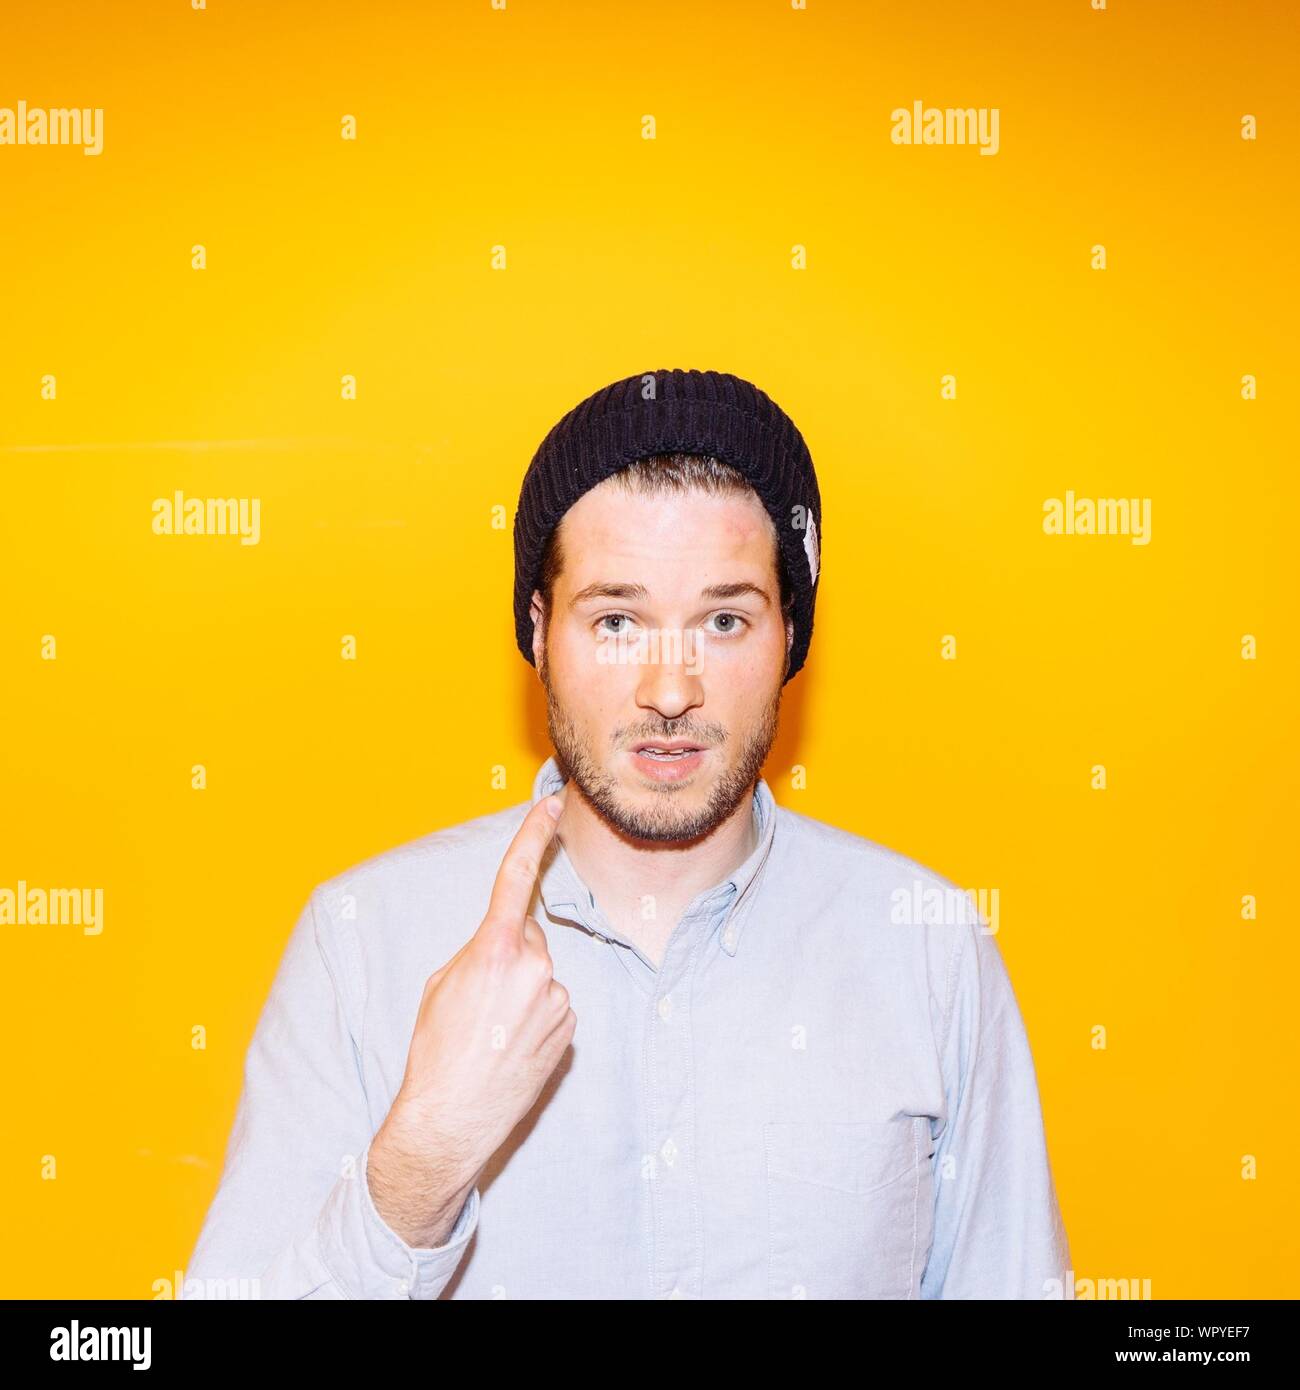 Retrato de Joven mostrando el dedo índice contra el fondo amarillo Foto de stock